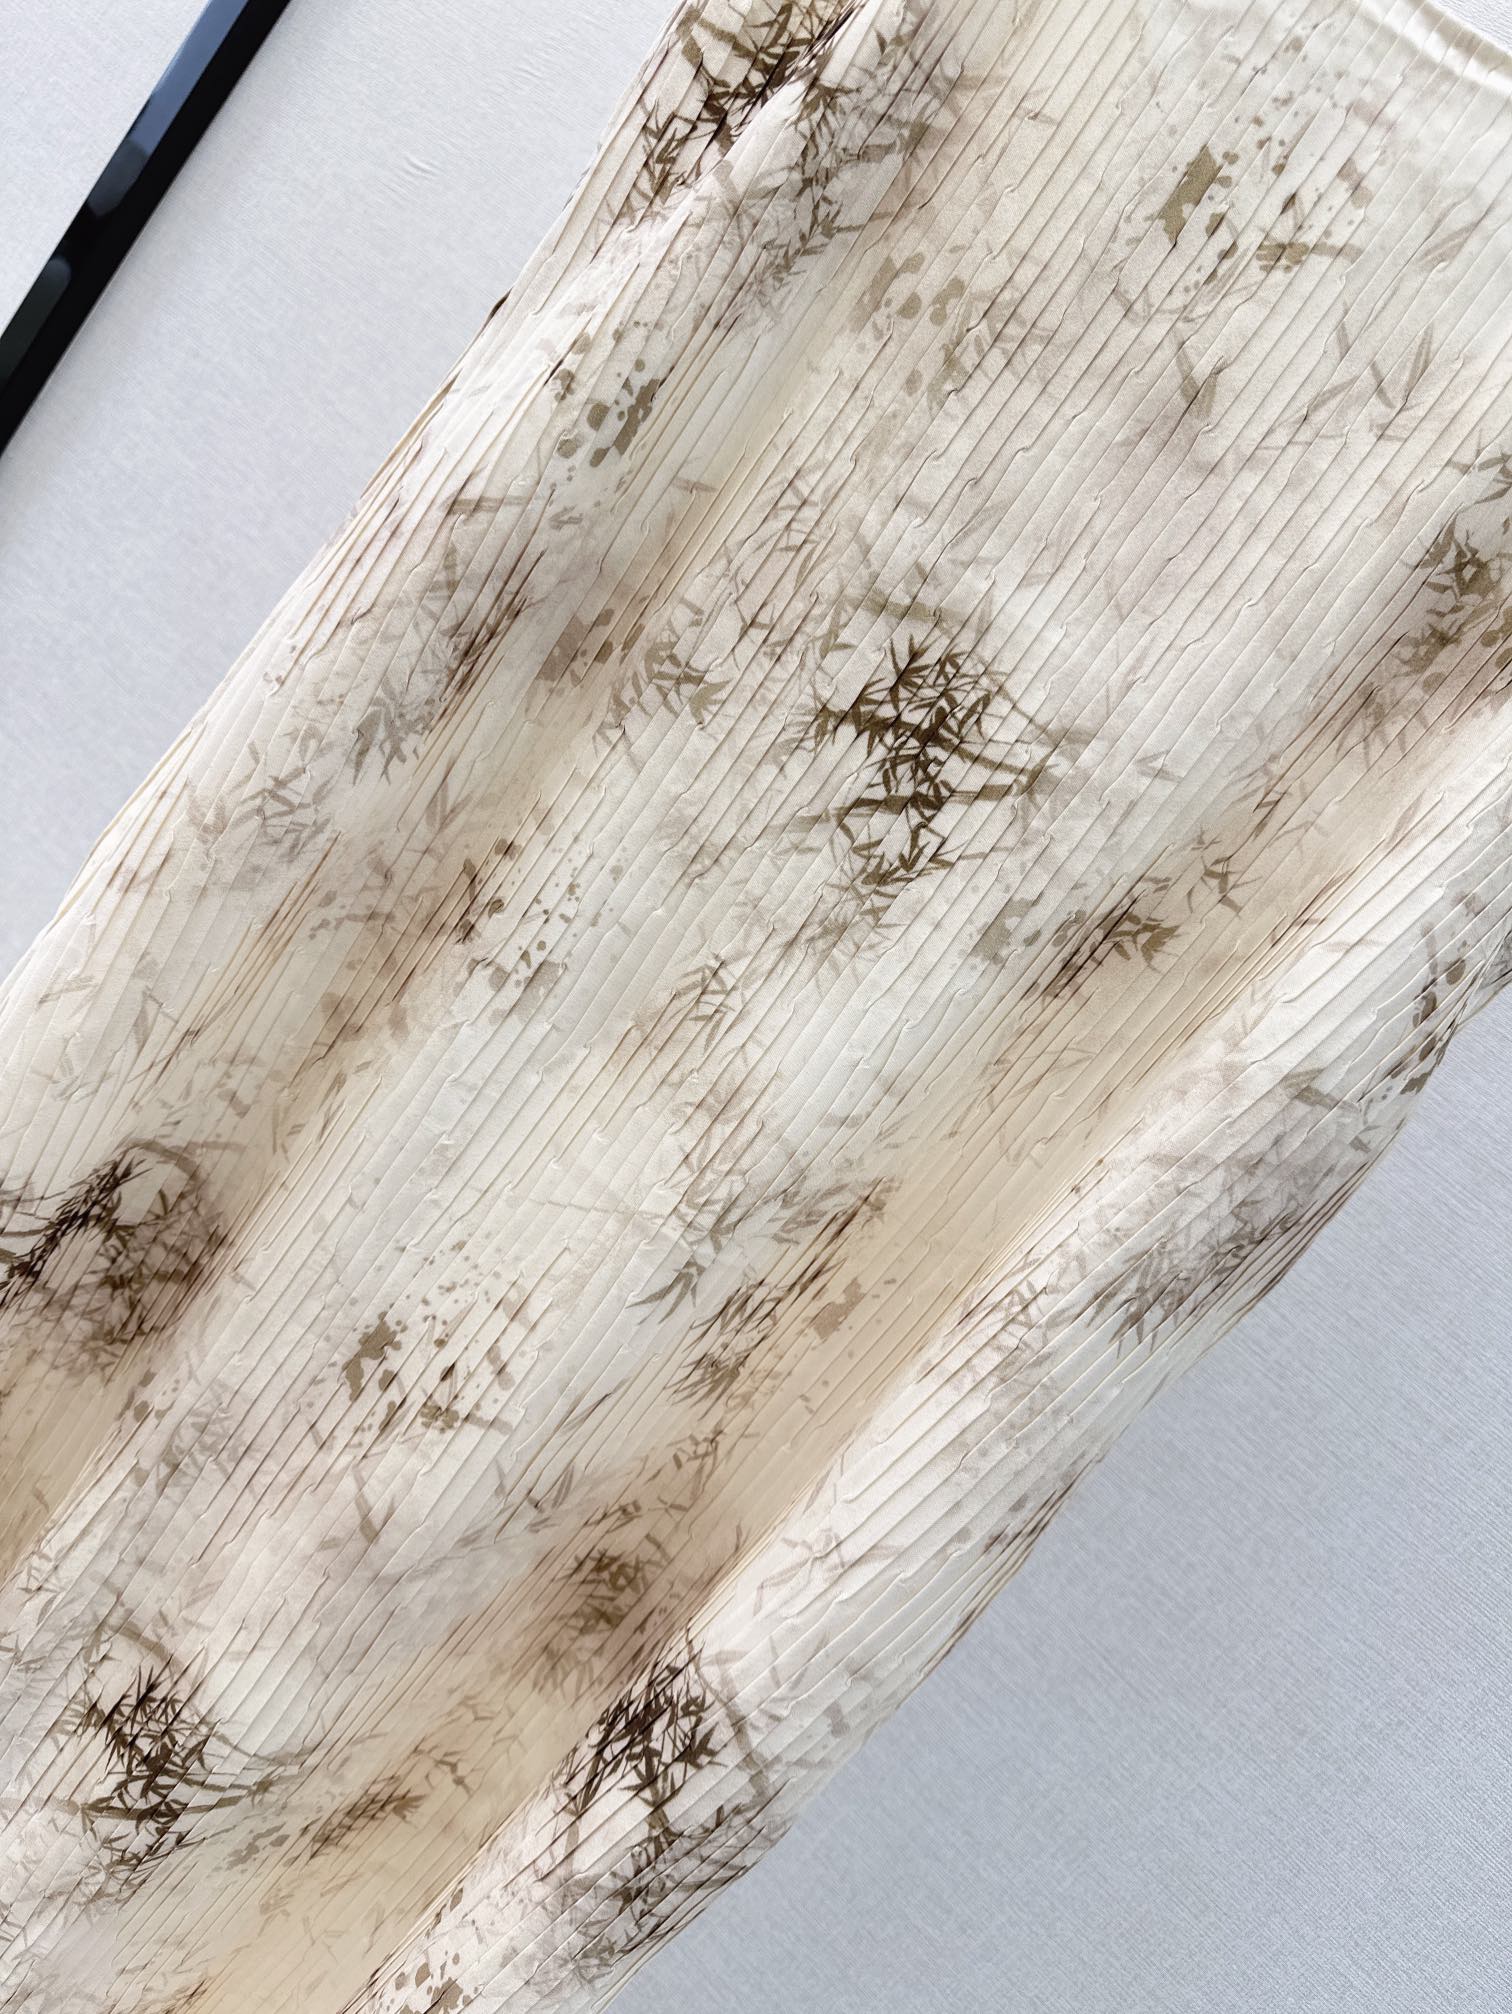 独家首发时髦小众设计24Ss春夏最新款印花吊带压褶连衣裙淡雅清新的度假风气息优雅花卉图案浪漫优雅的白富美